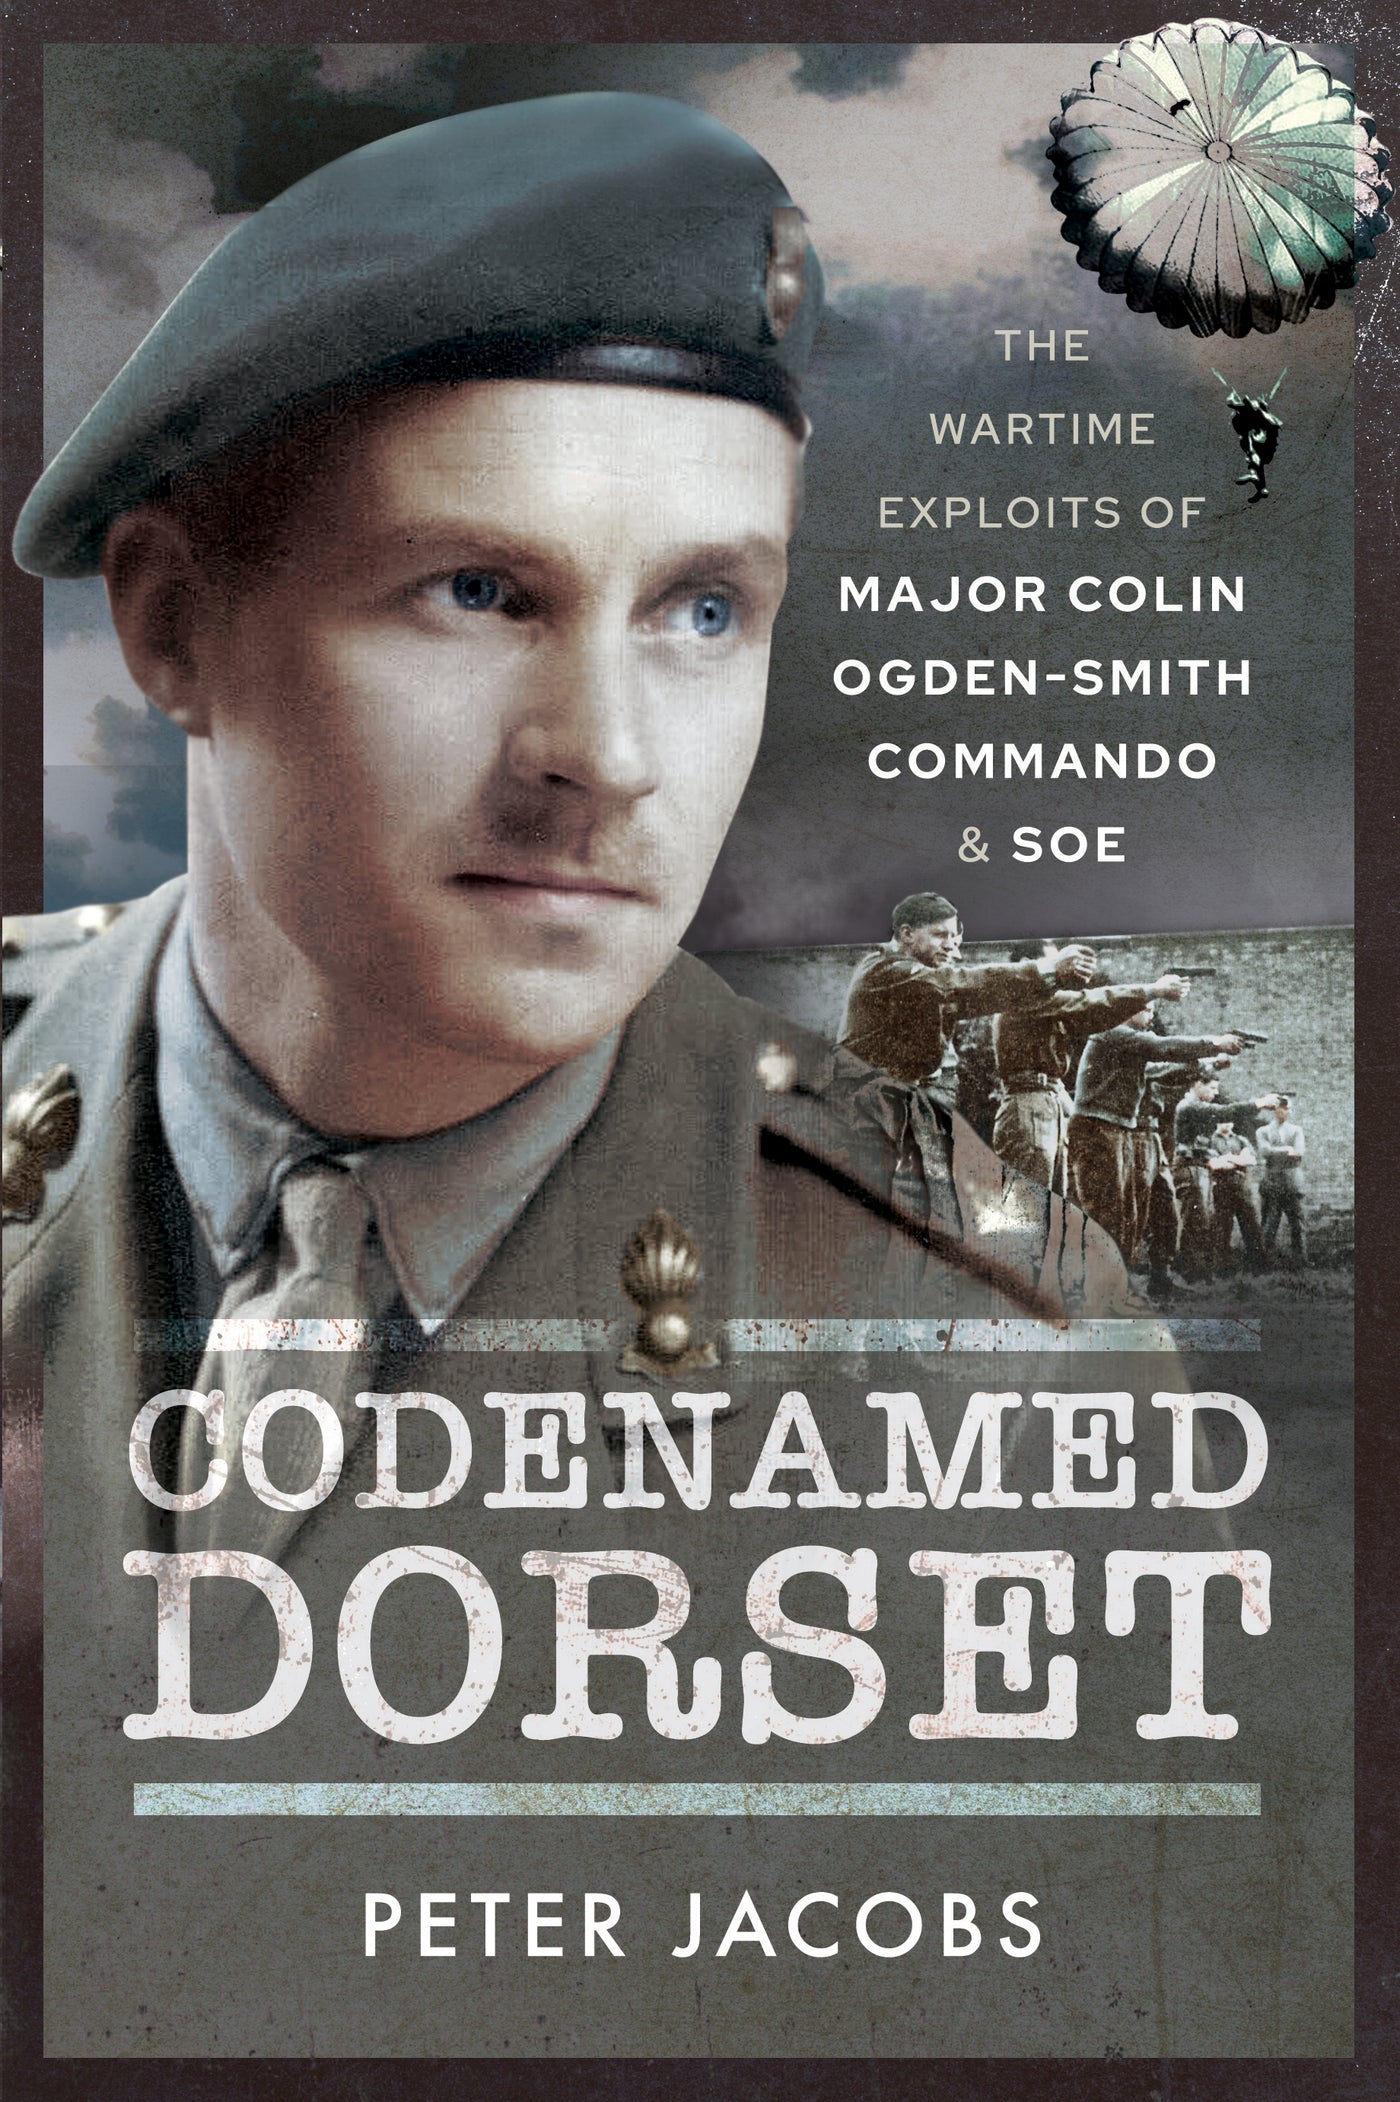 Codenamed Dorset